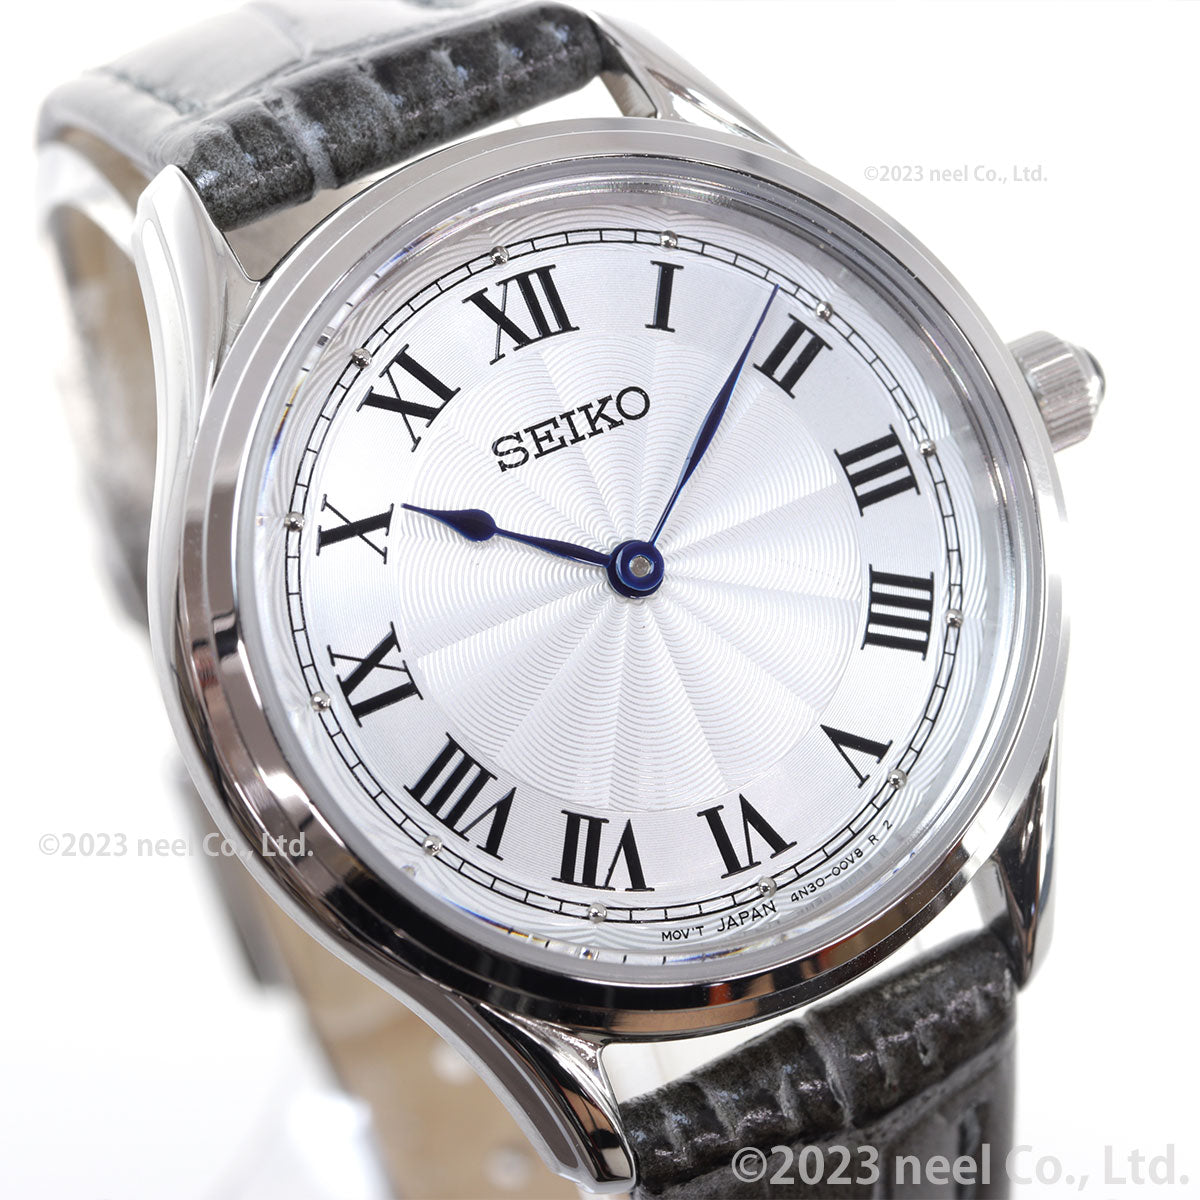 セイコー セレクション SEIKO SELECTION 流通限定モデル 腕時計 レディース ナノ・ユニバース nano・universe SSEH013